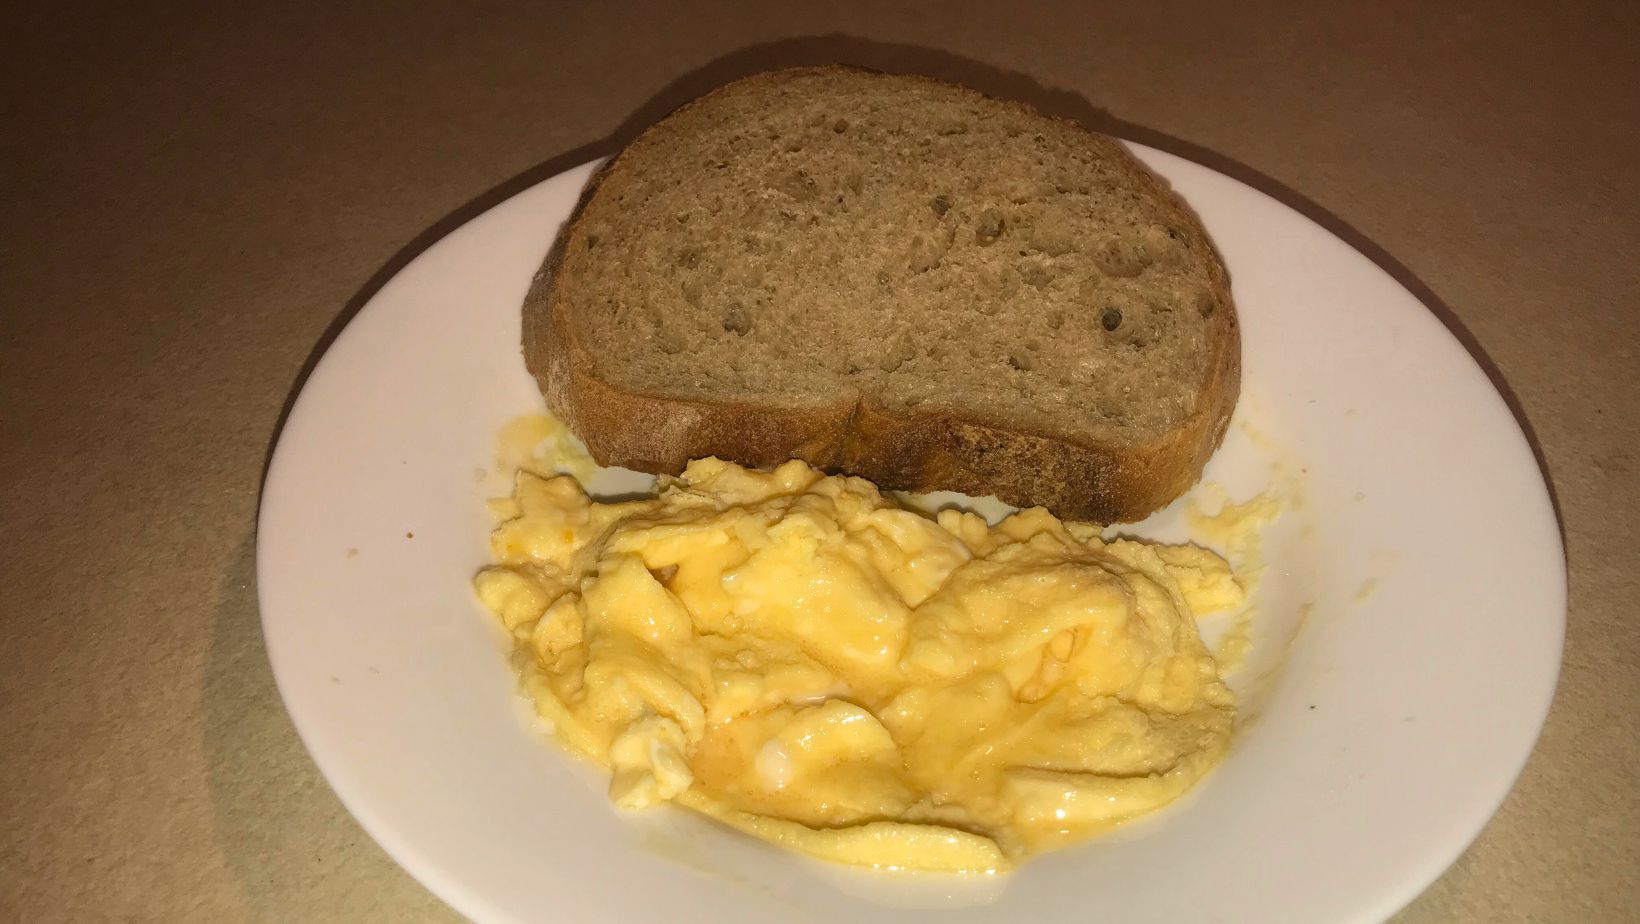 Kemény sült tojás mikróban – Mikrós tojásrántotta recept